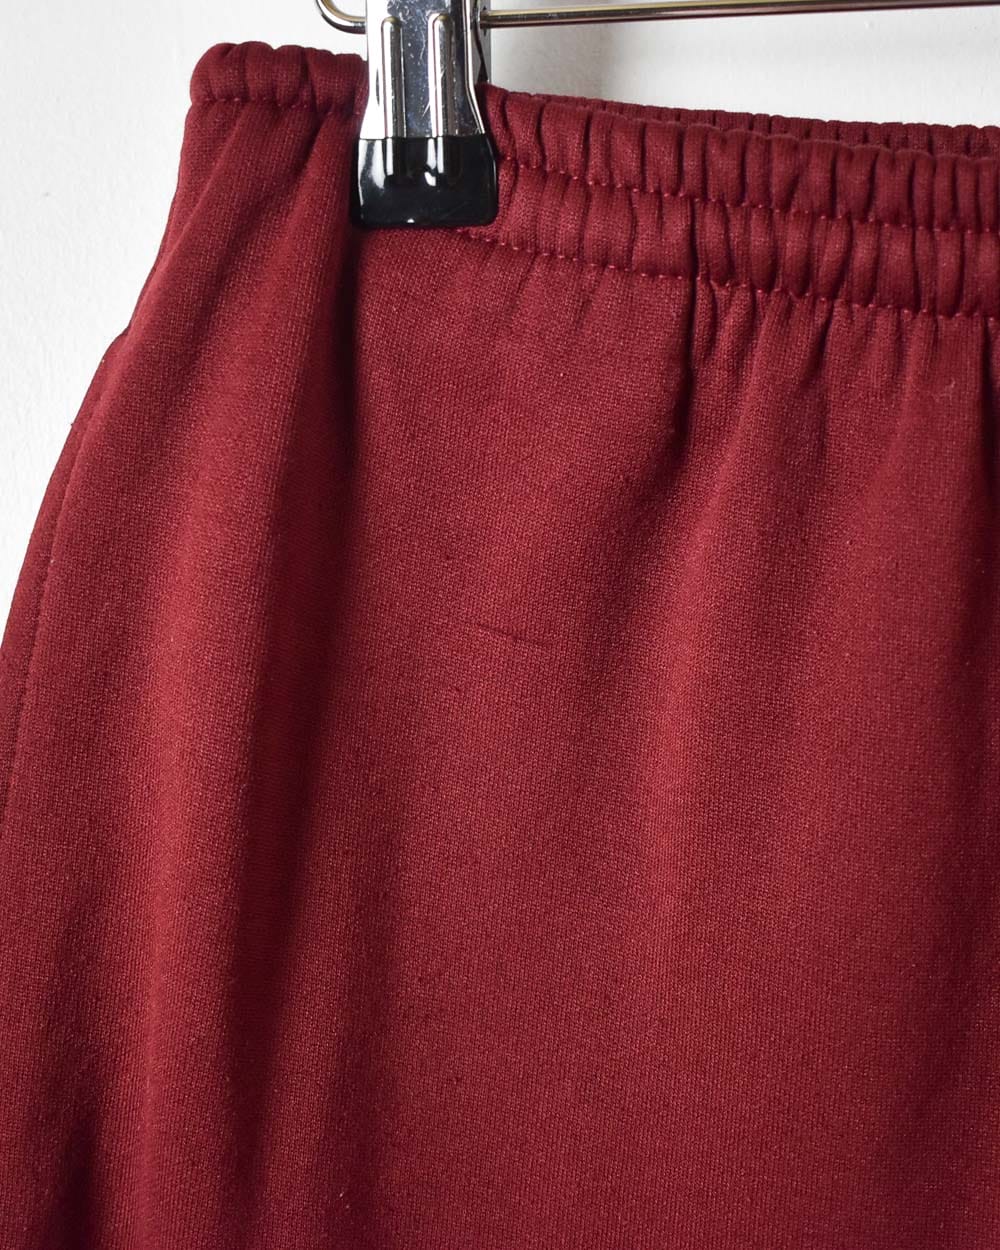 Maroon Nike Shorts - X-Large